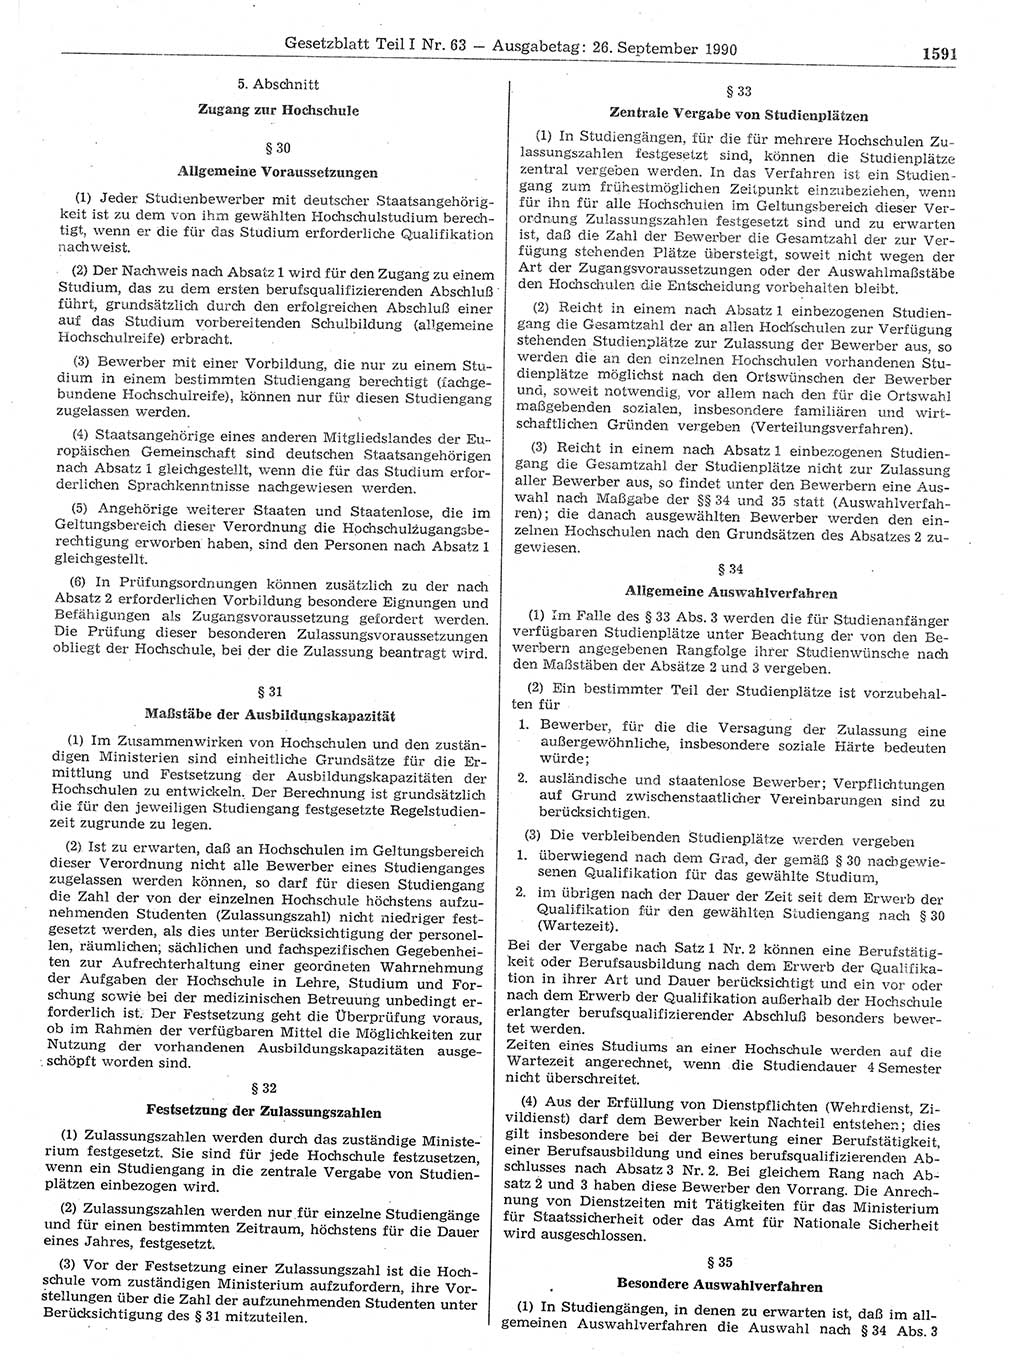 Gesetzblatt (GBl.) der Deutschen Demokratischen Republik (DDR) Teil Ⅰ 1990, Seite 1591 (GBl. DDR Ⅰ 1990, S. 1591)